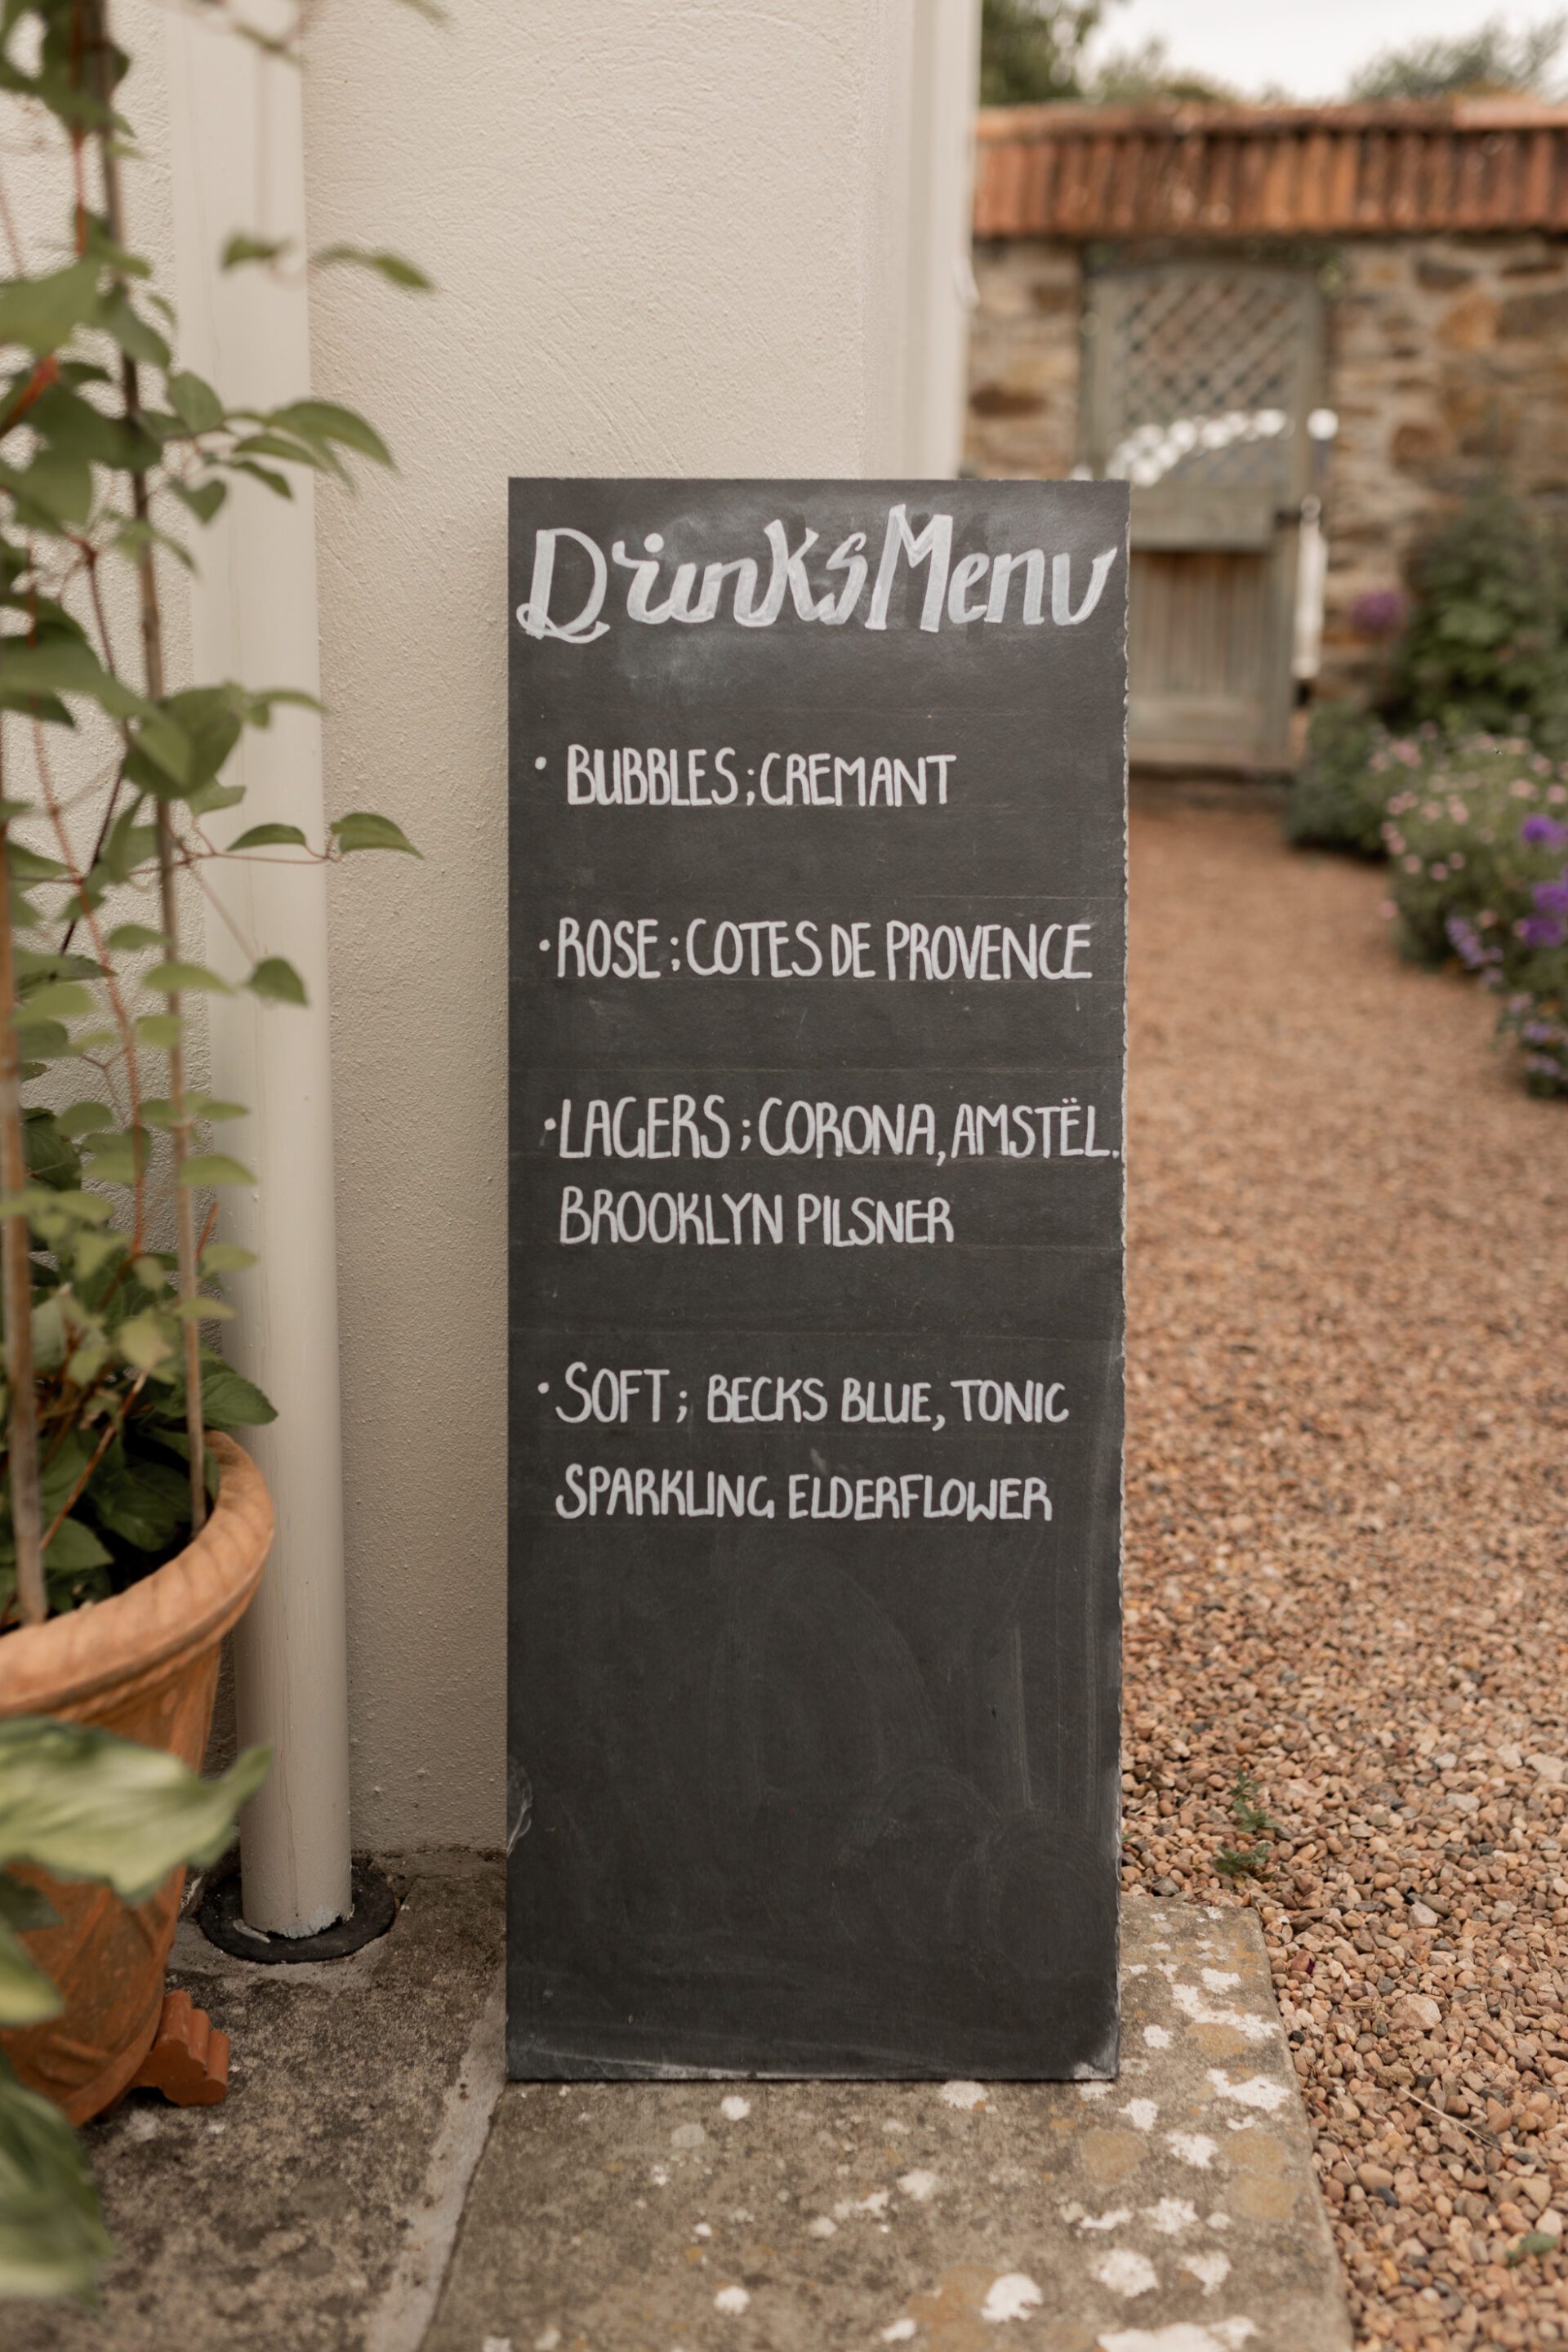 A DIY drinks menu sign